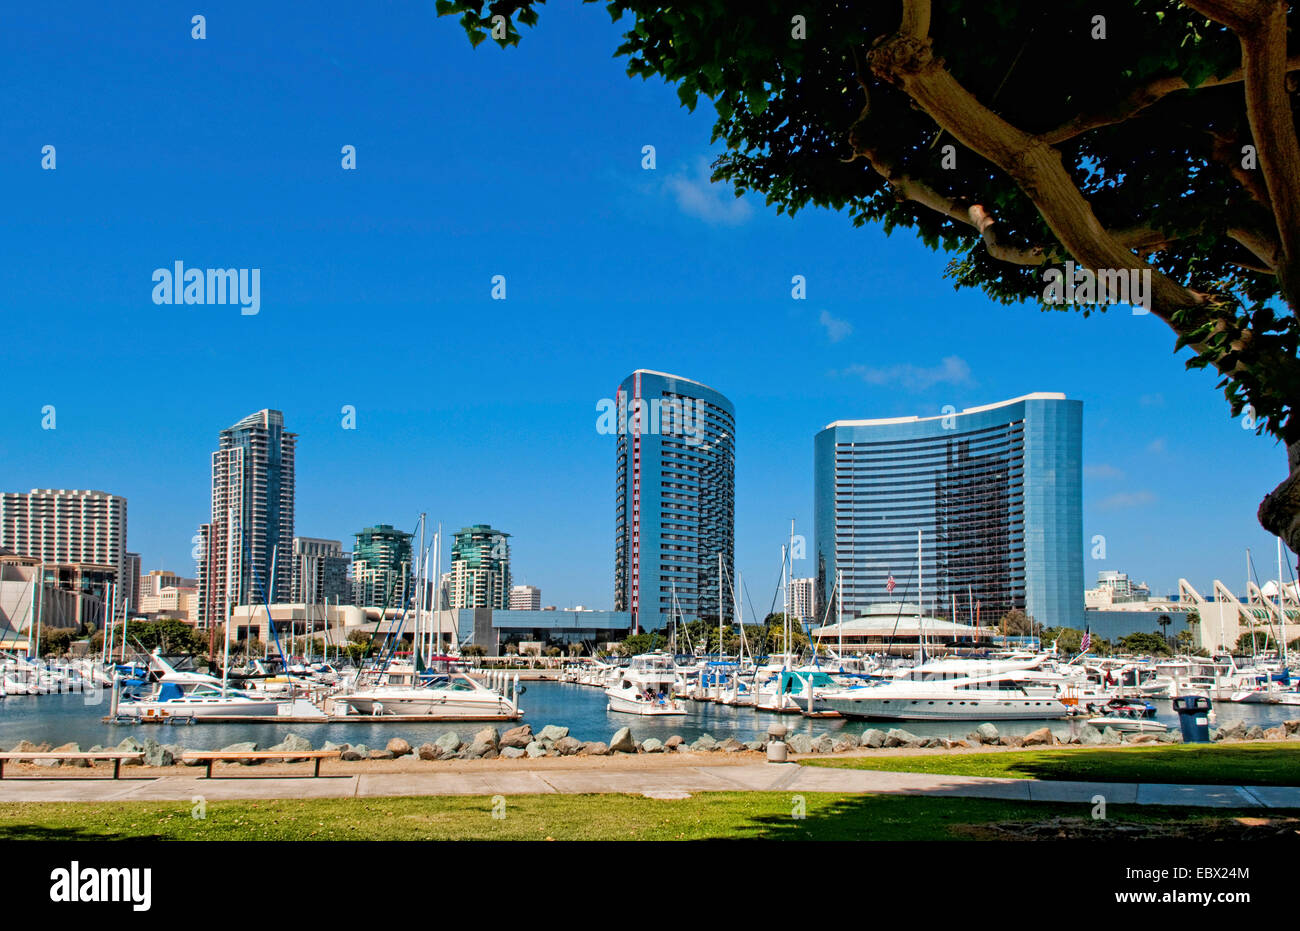 Seaport Village Marina in San Diego Bay mit Booten und Schiffen in Pier, USA, Kalifornien, San Diego Stockfoto